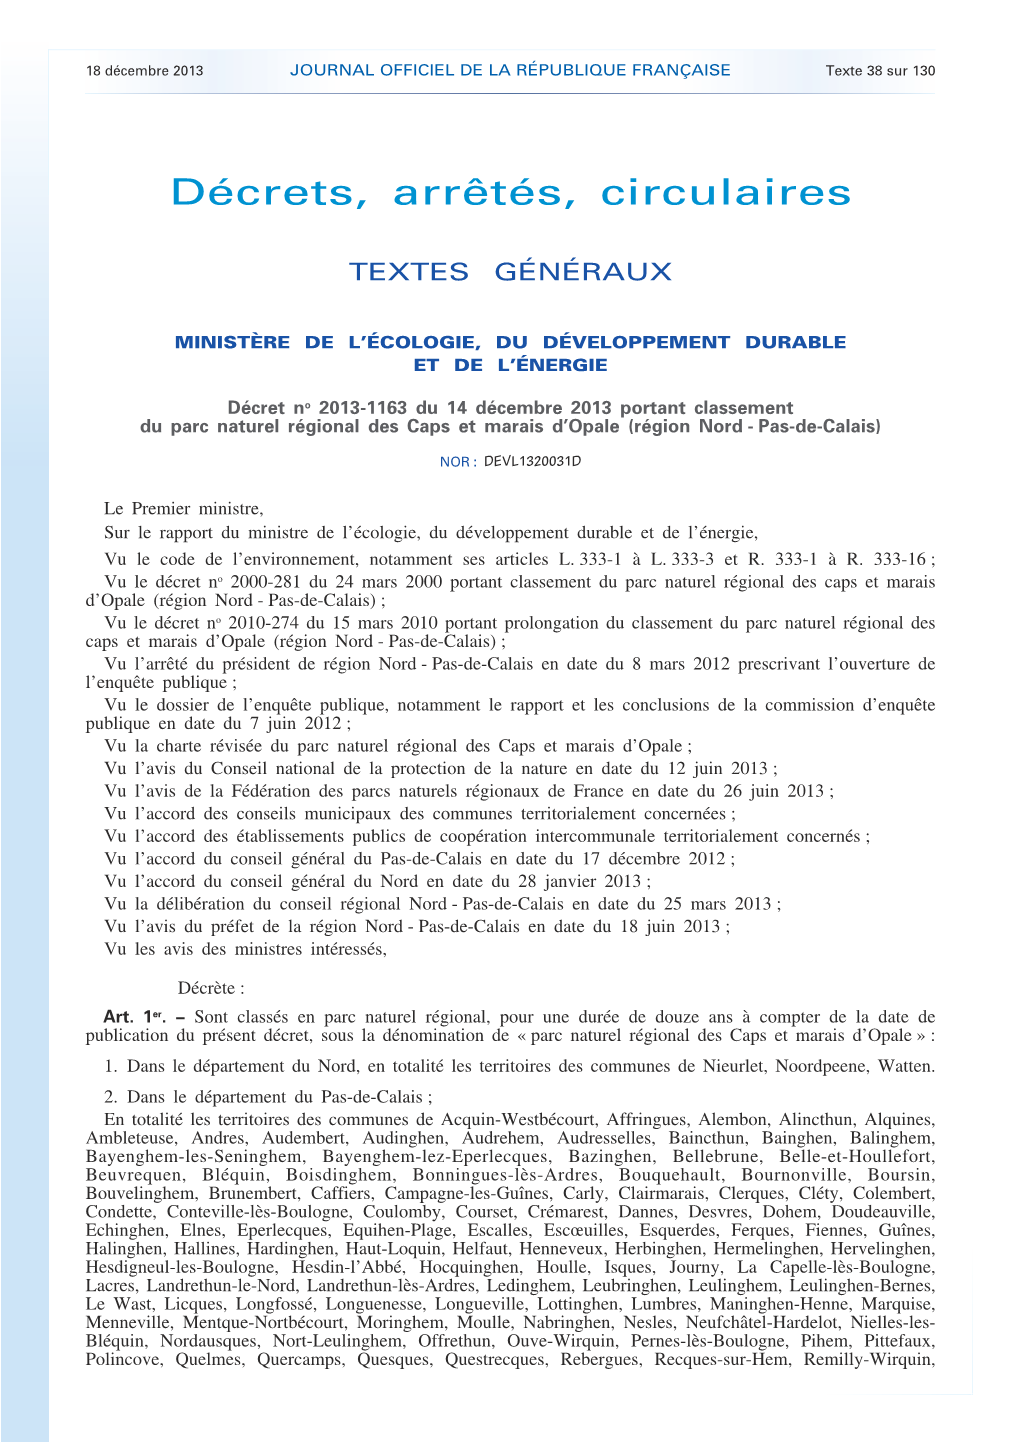 JOURNAL OFFICIEL DE LA RÉPUBLIQUE FRANÇAISE Texte 38 Sur 130